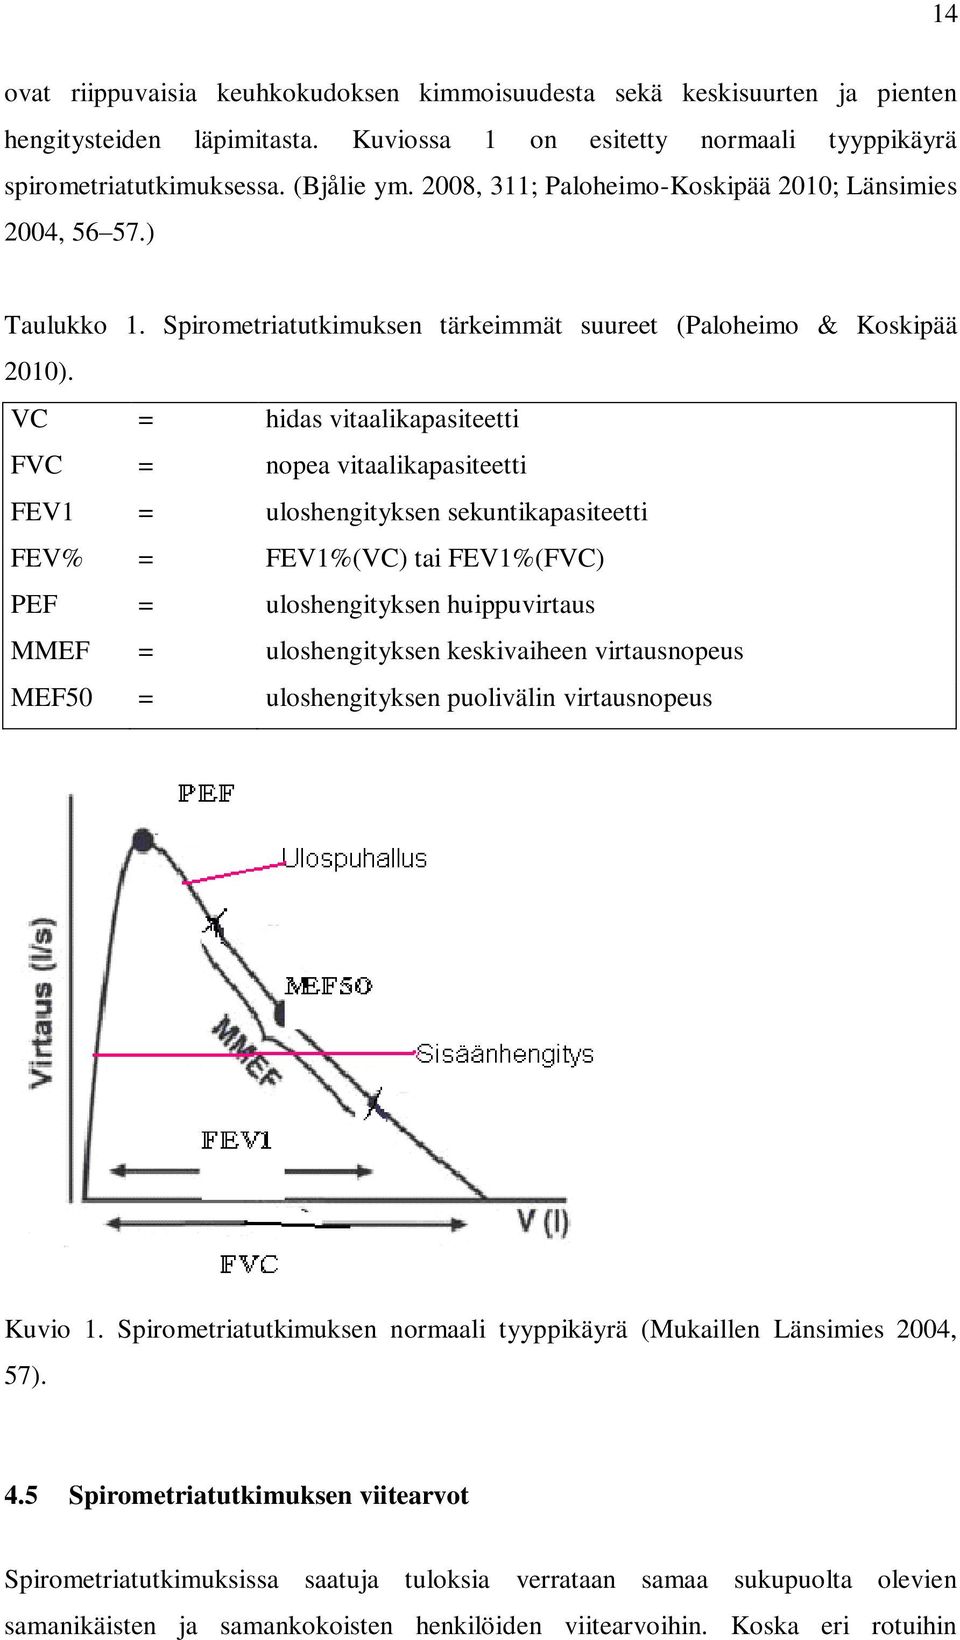 VC = hidas vitaalikapasiteetti FVC = nopea vitaalikapasiteetti FEV1 = uloshengityksen sekuntikapasiteetti FEV% = FEV1%(VC) tai FEV1%(FVC) PEF = uloshengityksen huippuvirtaus MMEF = uloshengityksen